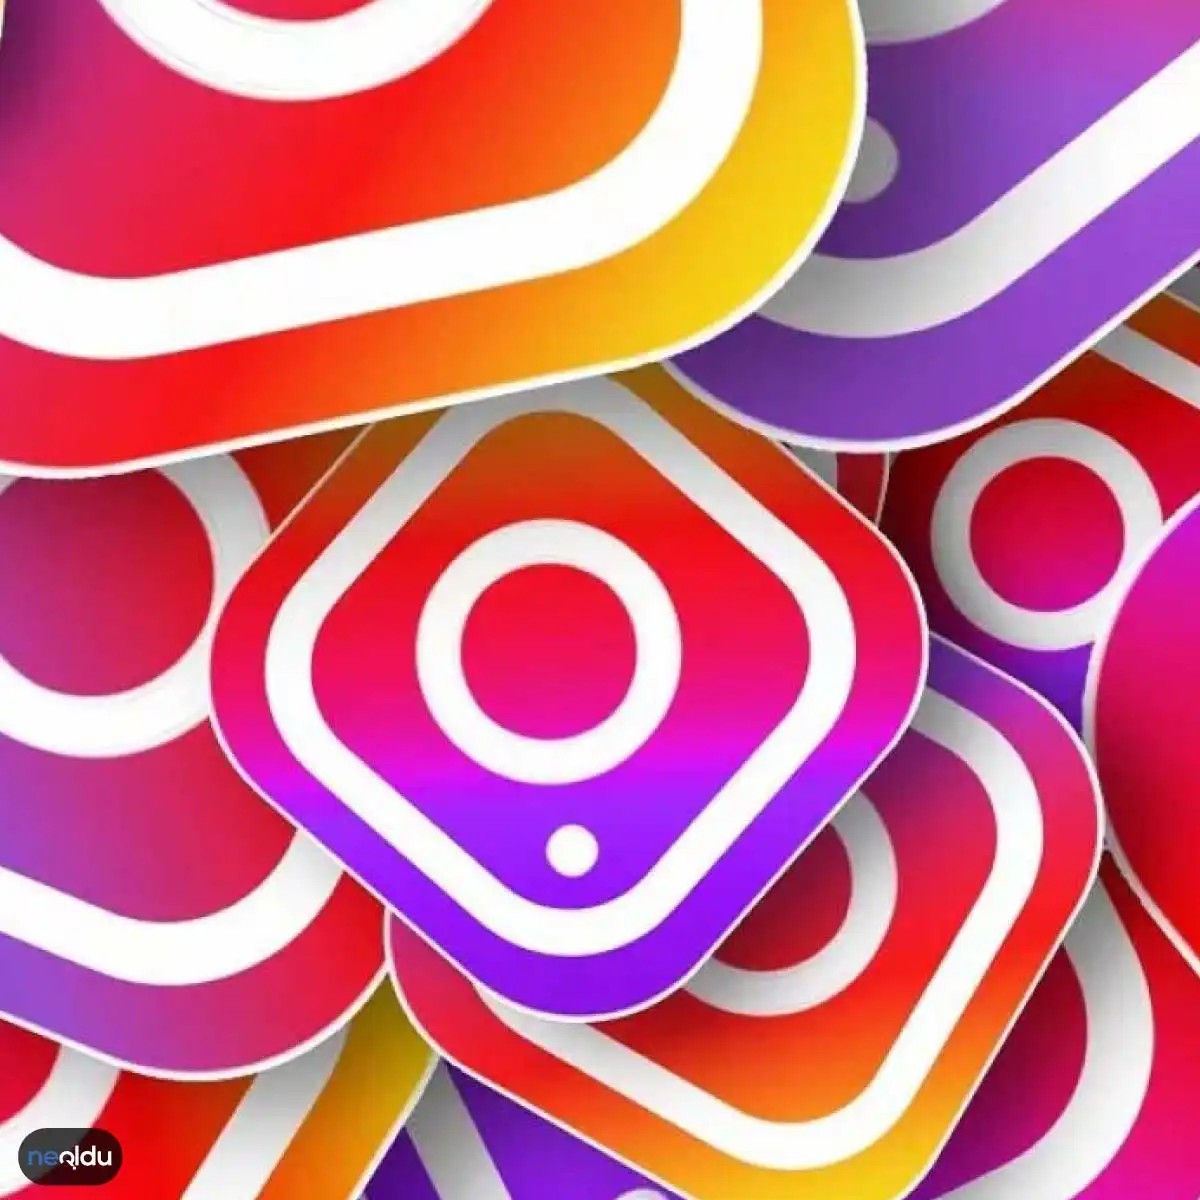 Instagram Beğeni Sayısı Nasıl Kapatılır? 